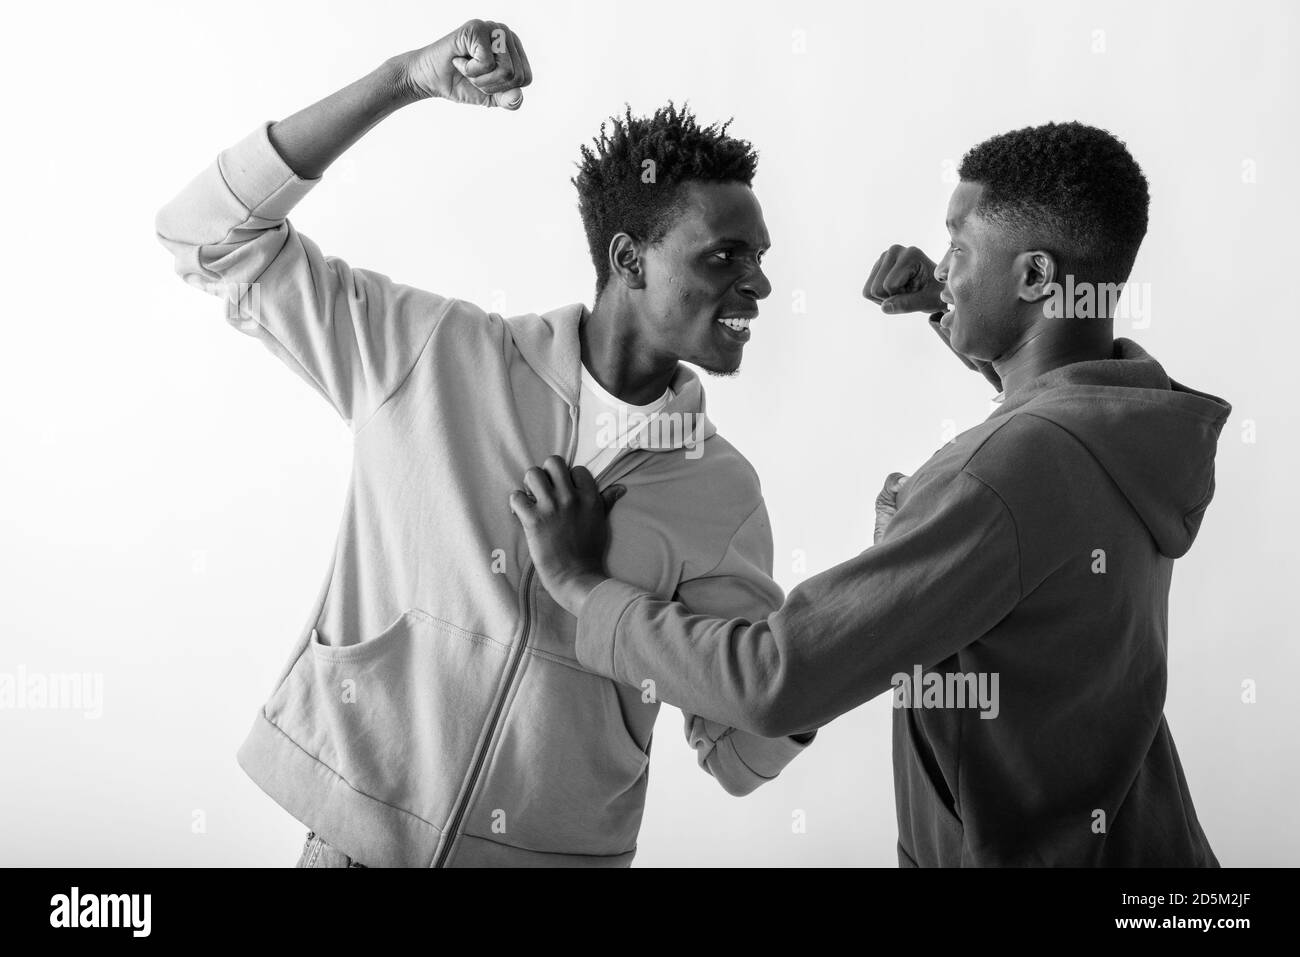 Portrait de deux jeunes amis de l'Afrique noire qui se battent contre l'arrière-plan blanc Banque D'Images